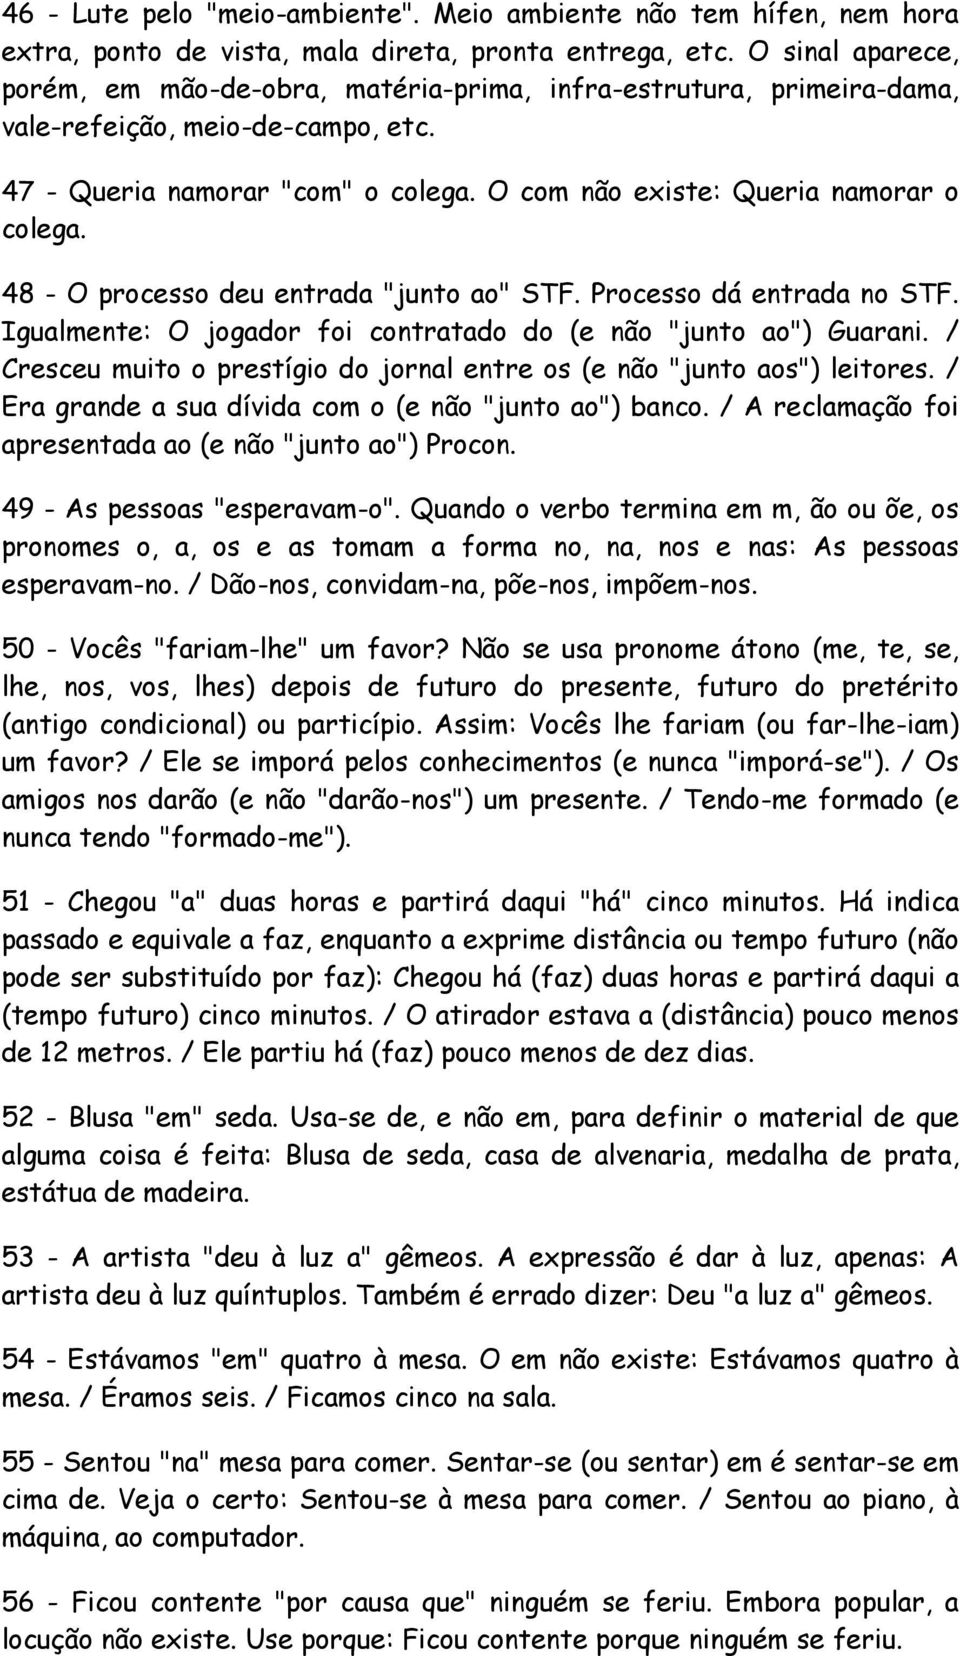 48 - O processo deu entrada "junto ao" STF. Processo dá entrada no STF. Igualmente: O jogador foi contratado do (e não "junto ao") Guarani.